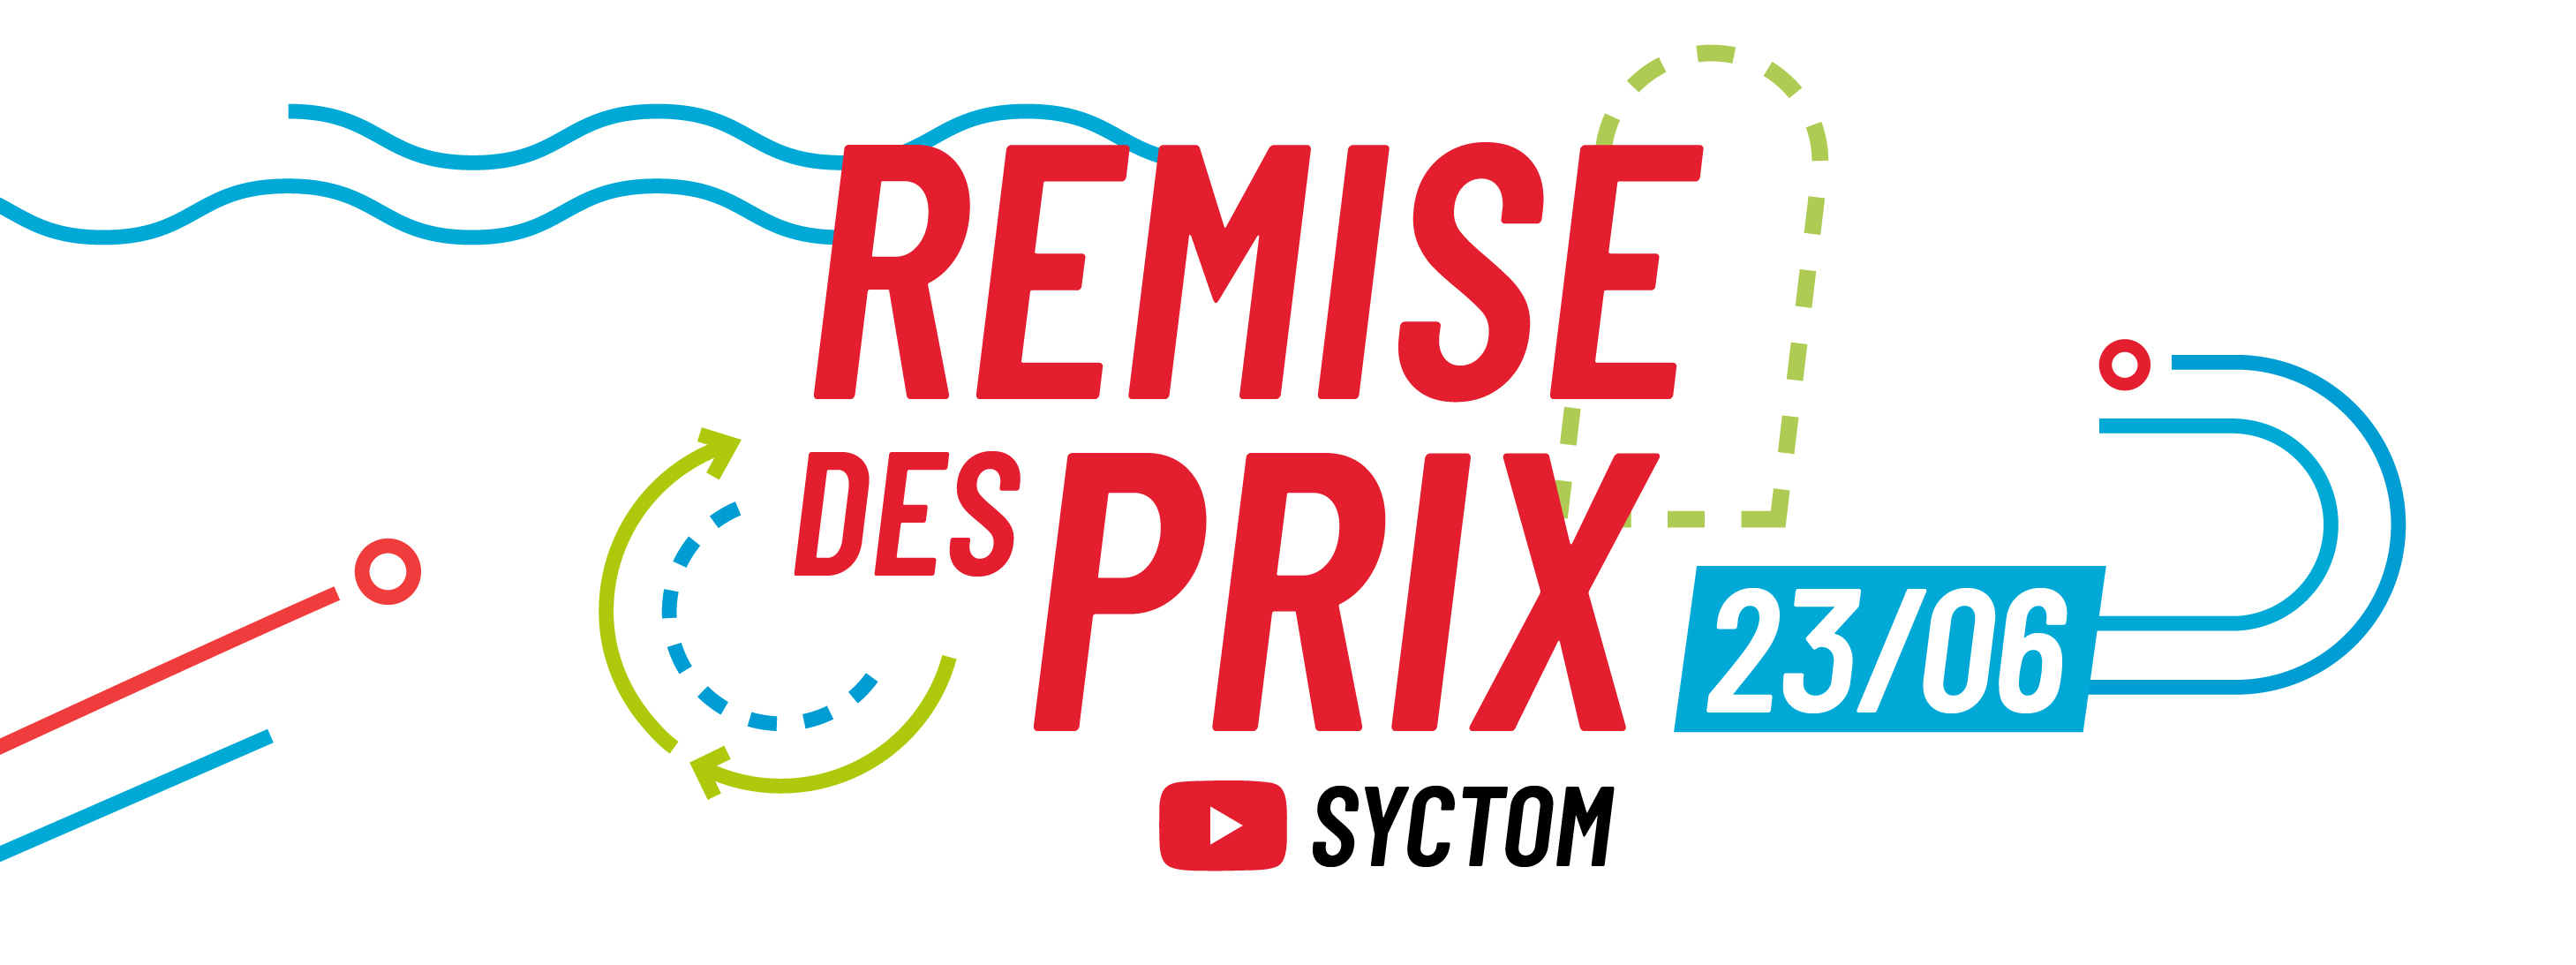 Remise des prix du concours DZD 2022 le jeudi 23 juin, sur la chapien YouTube du Syctom